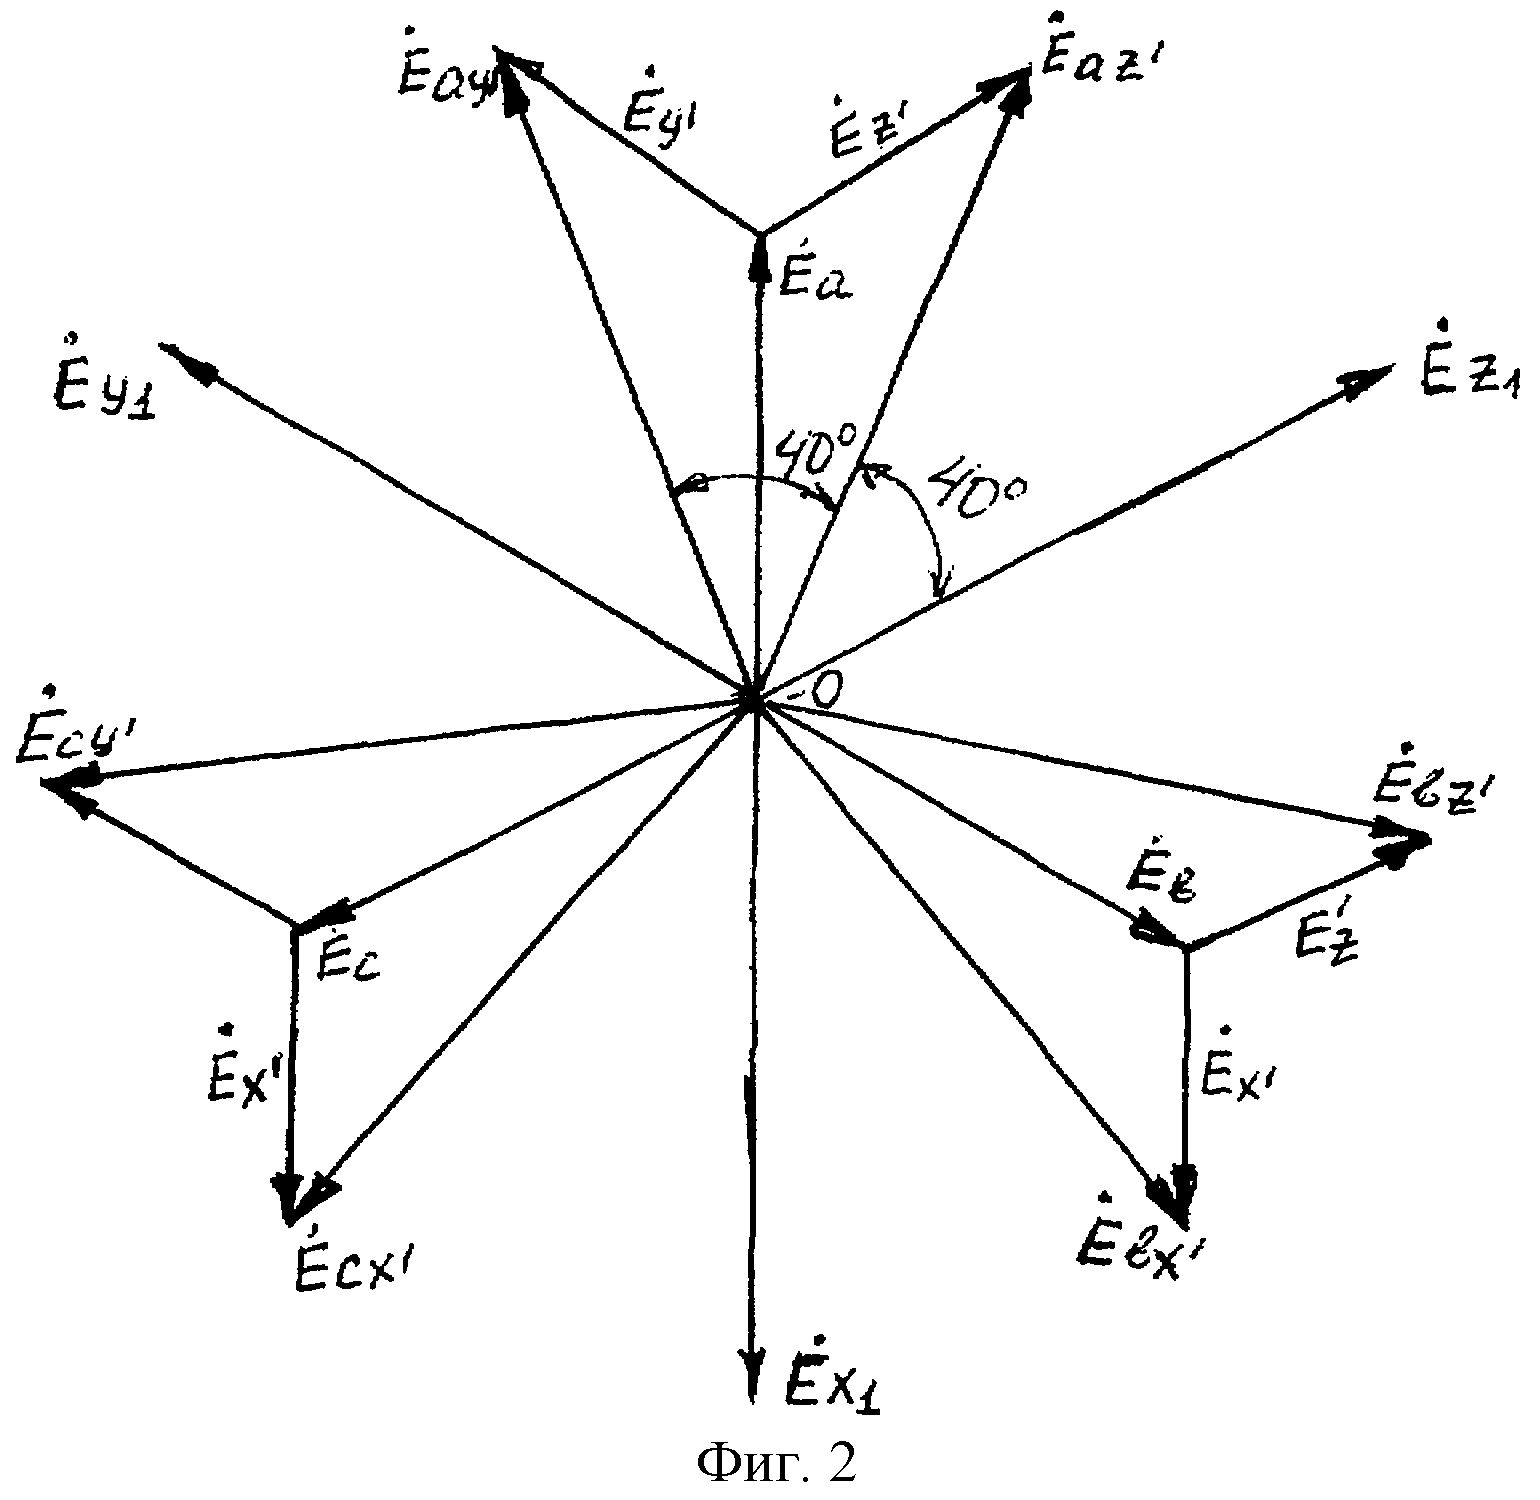 Как обозначают вывод нулевой точки звезды обмотки высшего напряжения трансформатора